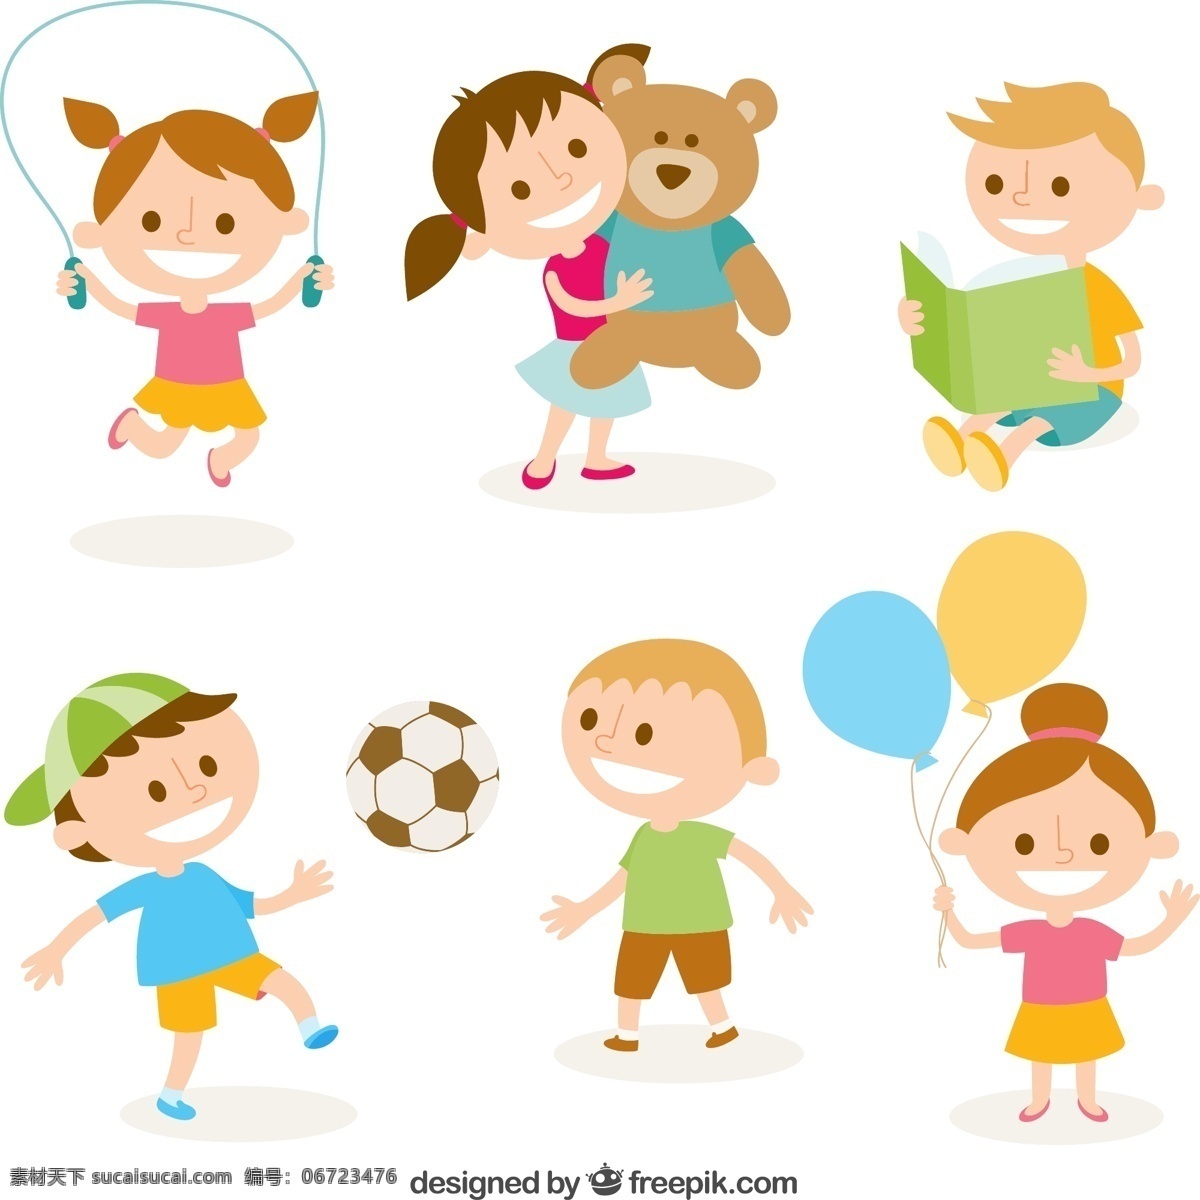 可爱 孩子 运动 插图 图书 儿童 足球 游戏 娱乐 搞笑 泰迪 游乐场 读取 打球 跳绳